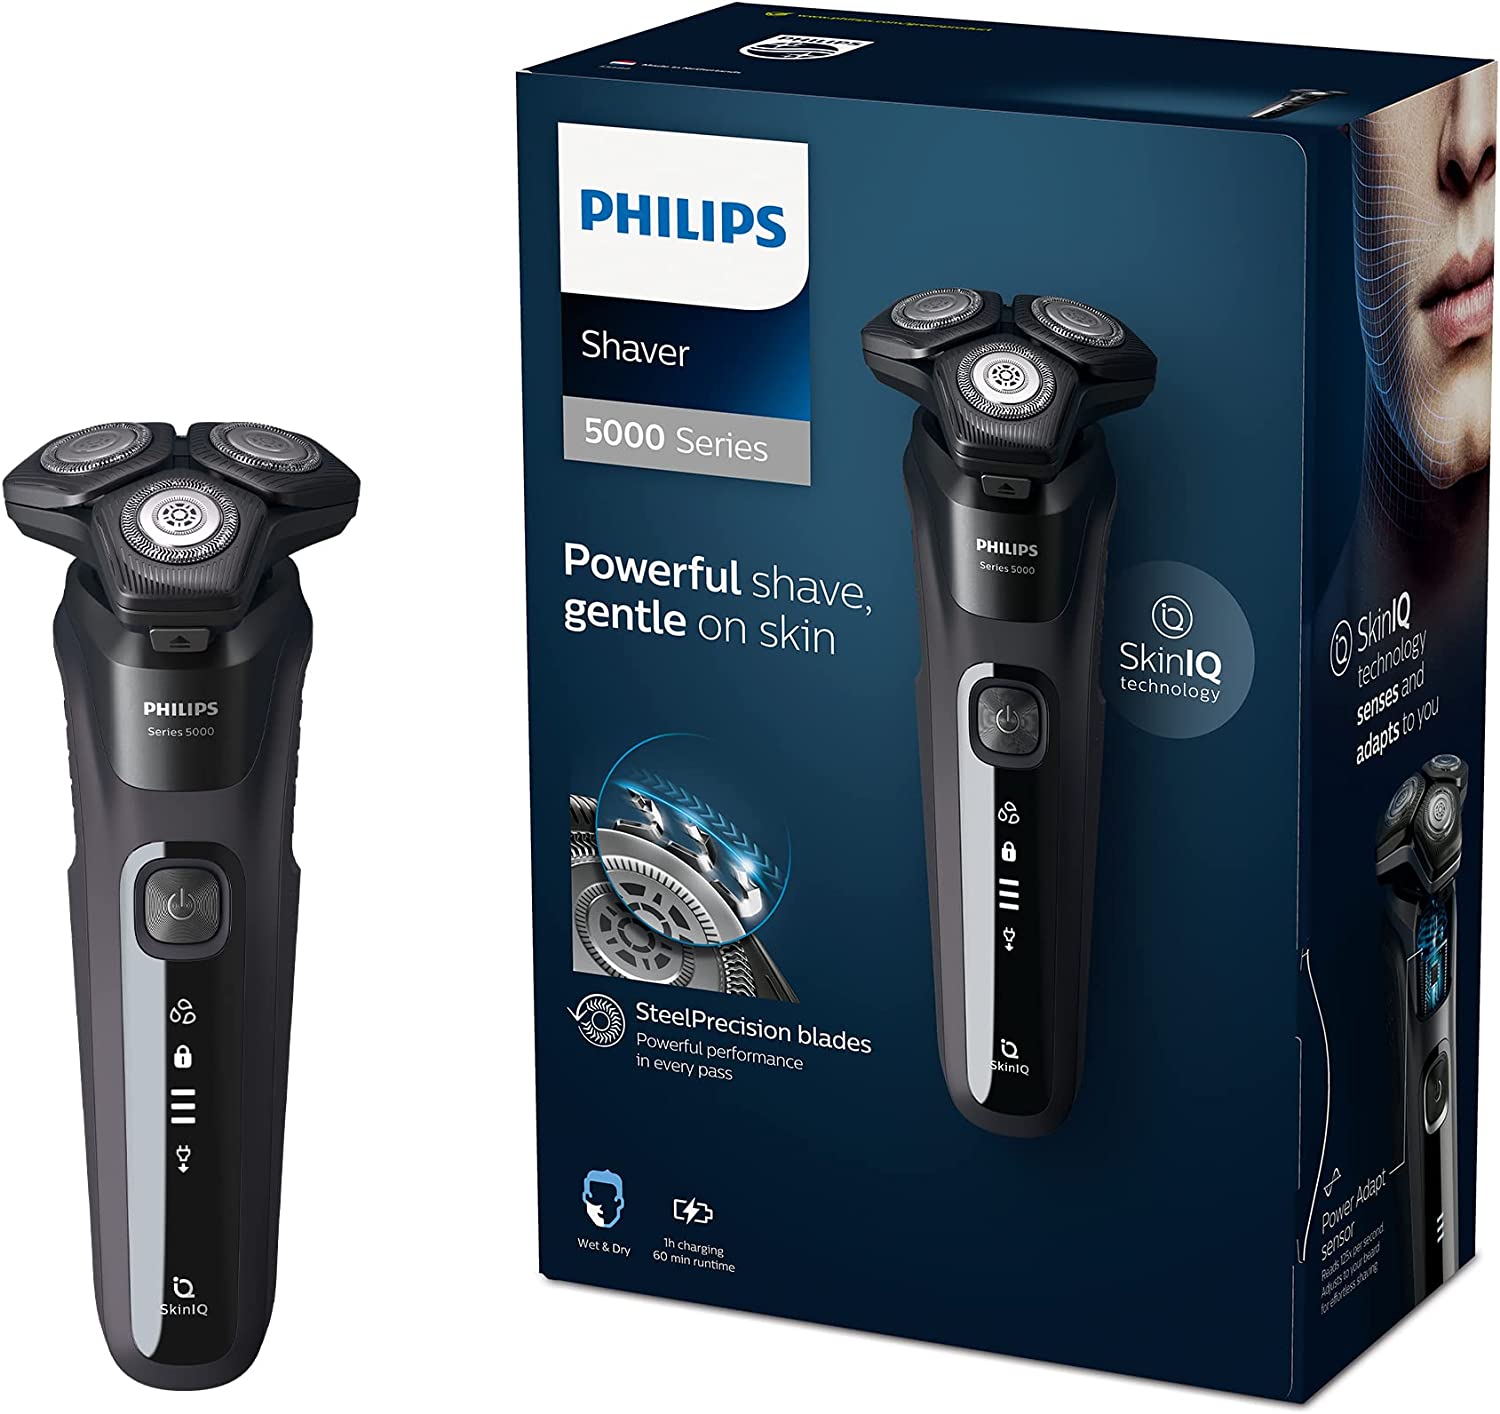 Philips Shaver Series 9000 vs. 7000 vs. vs. Differences?